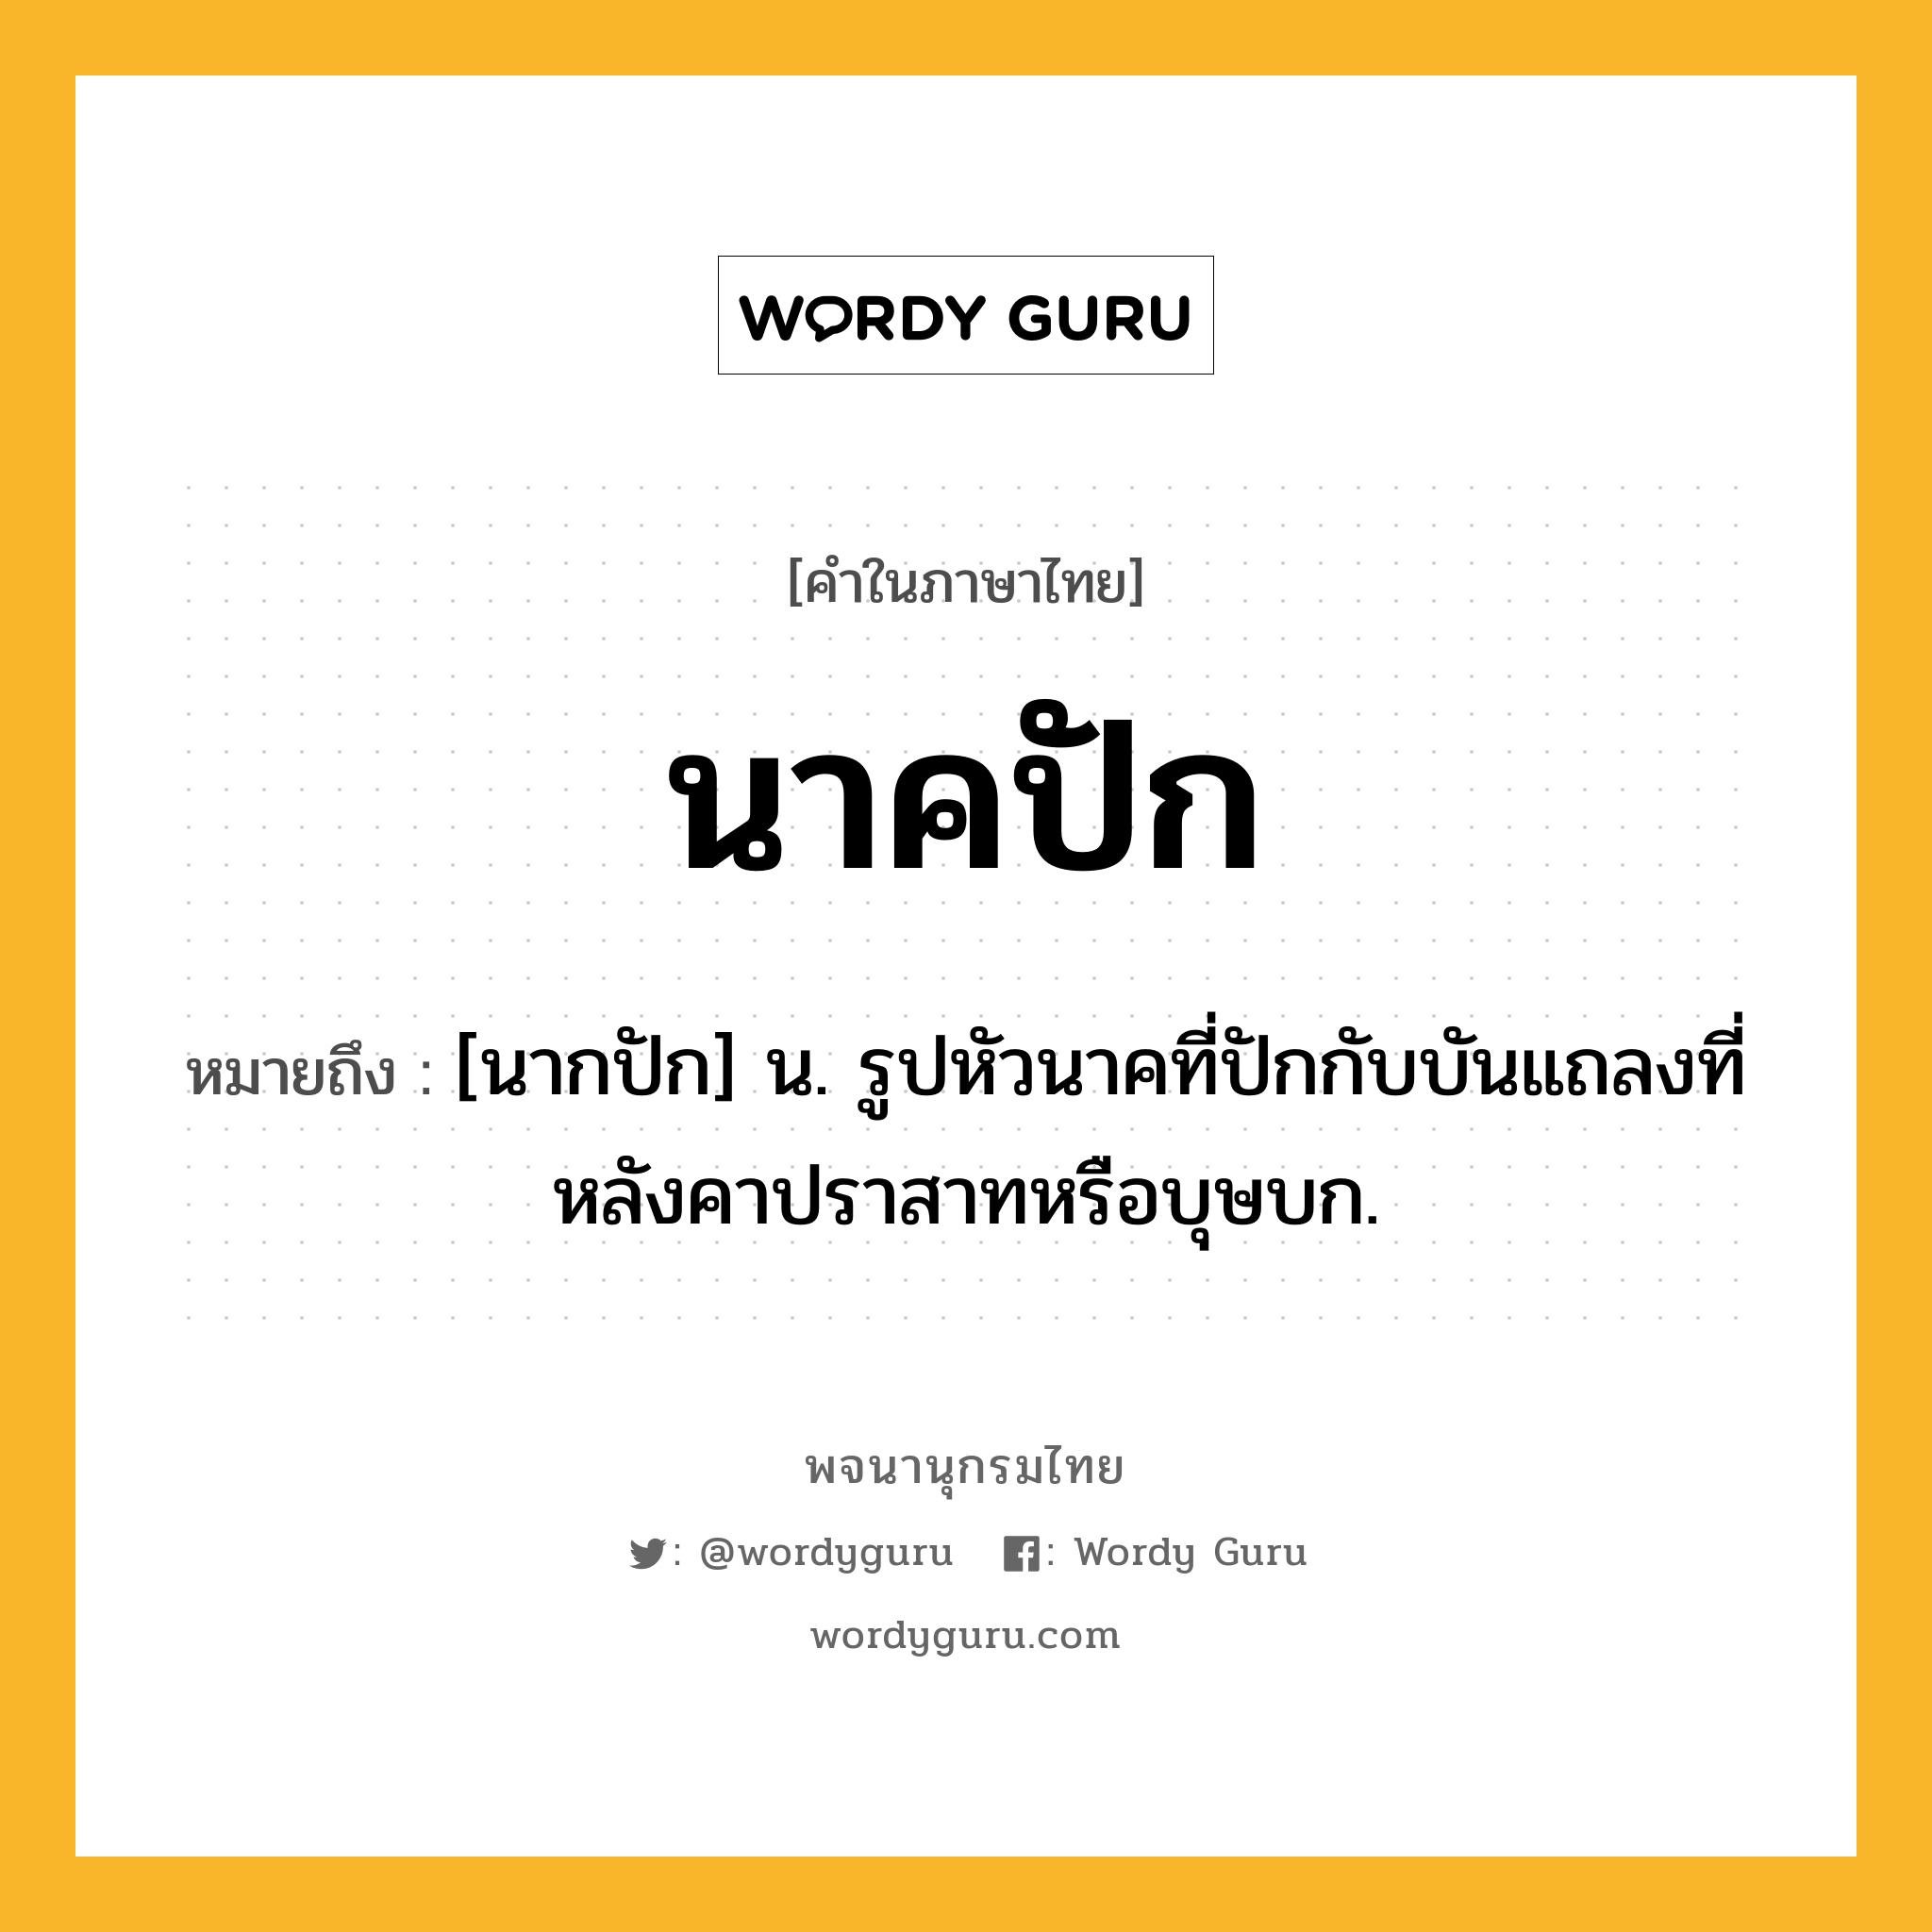 นาคปัก หมายถึงอะไร?, คำในภาษาไทย นาคปัก หมายถึง [นากปัก] น. รูปหัวนาคที่ปักกับบันแถลงที่หลังคาปราสาทหรือบุษบก.